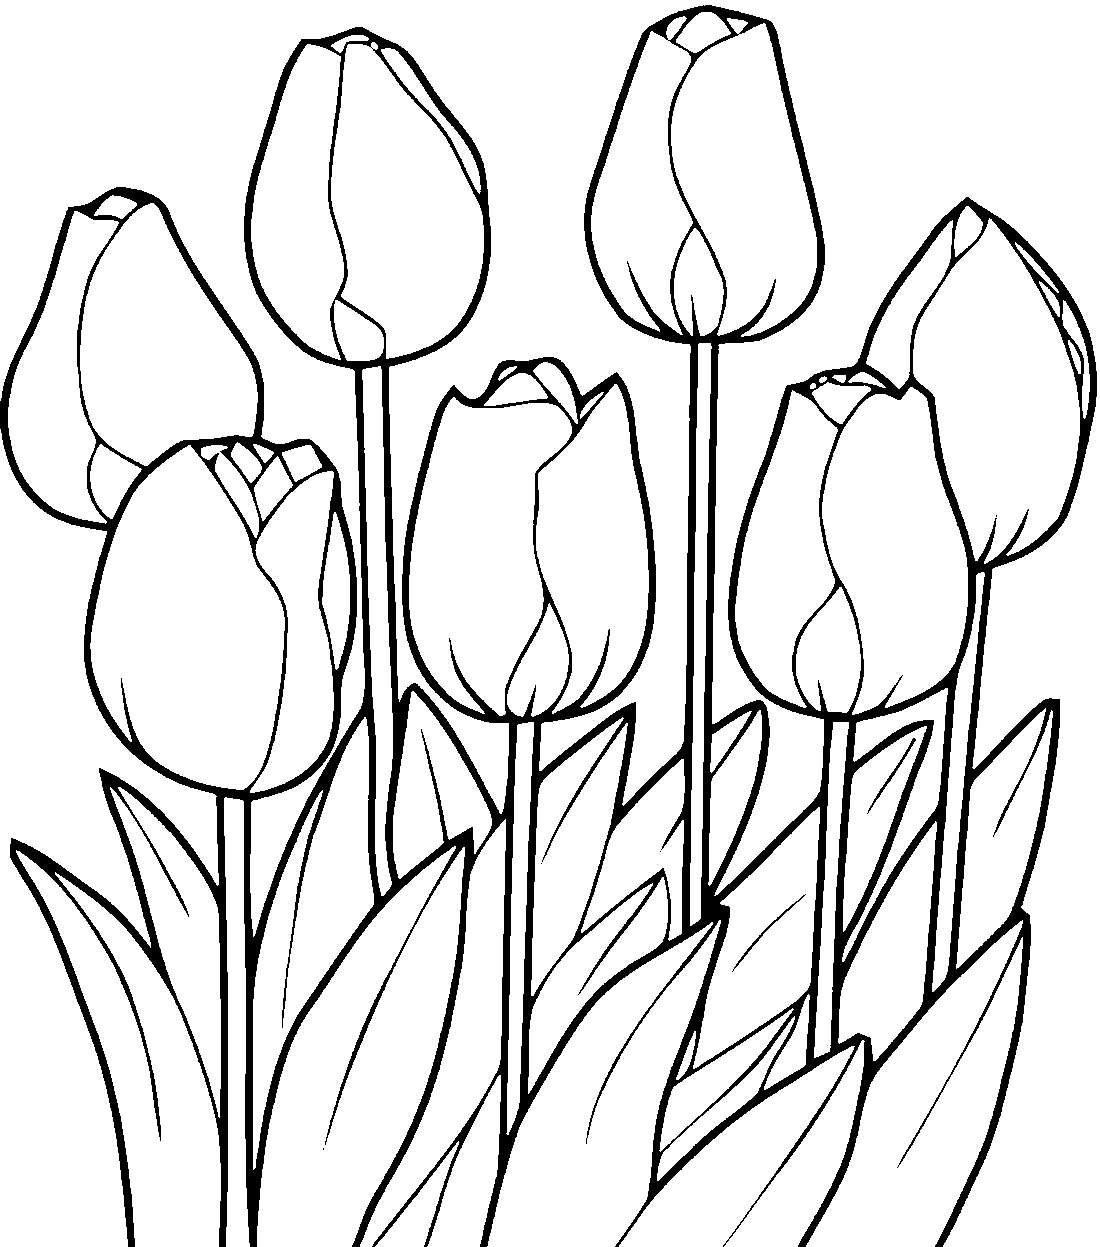 Coloriage Tulipes Tulipes en croissance